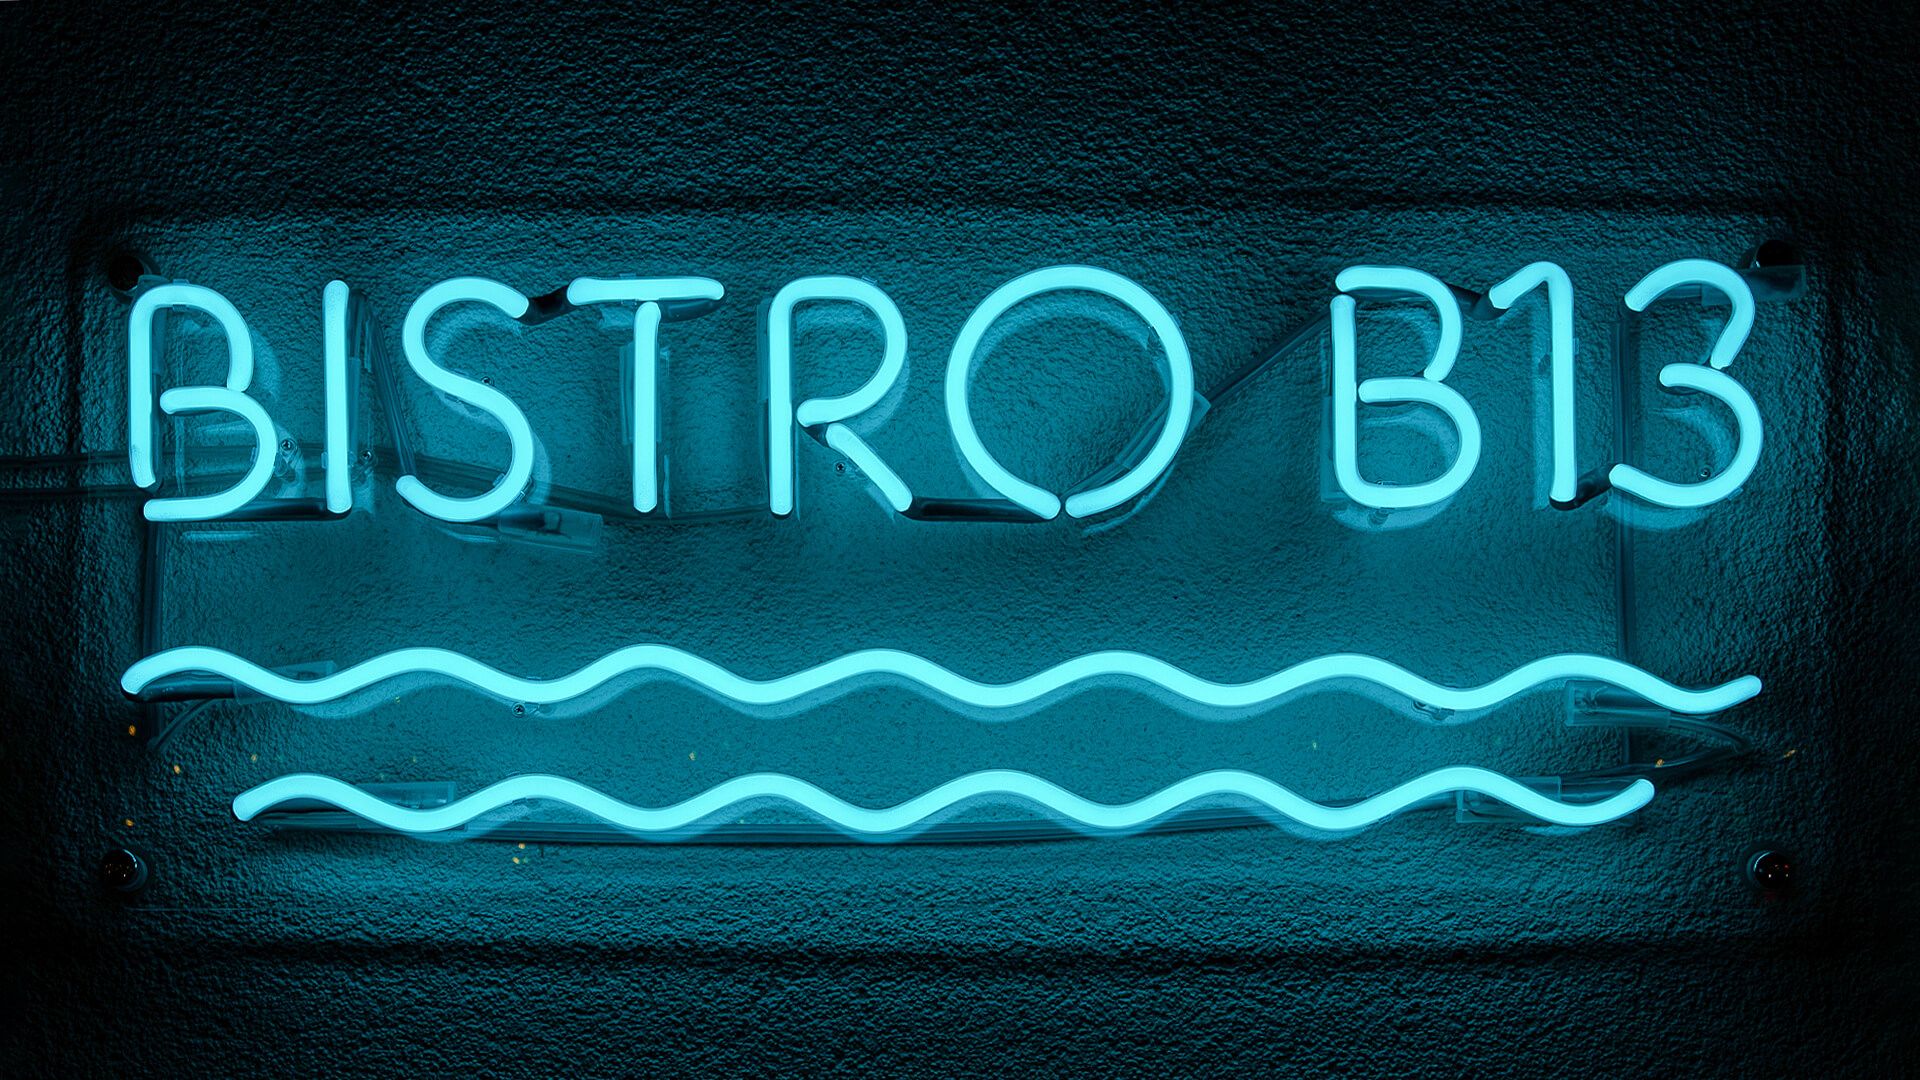 Bistro B13 - Vetro neon turchese Bistro.